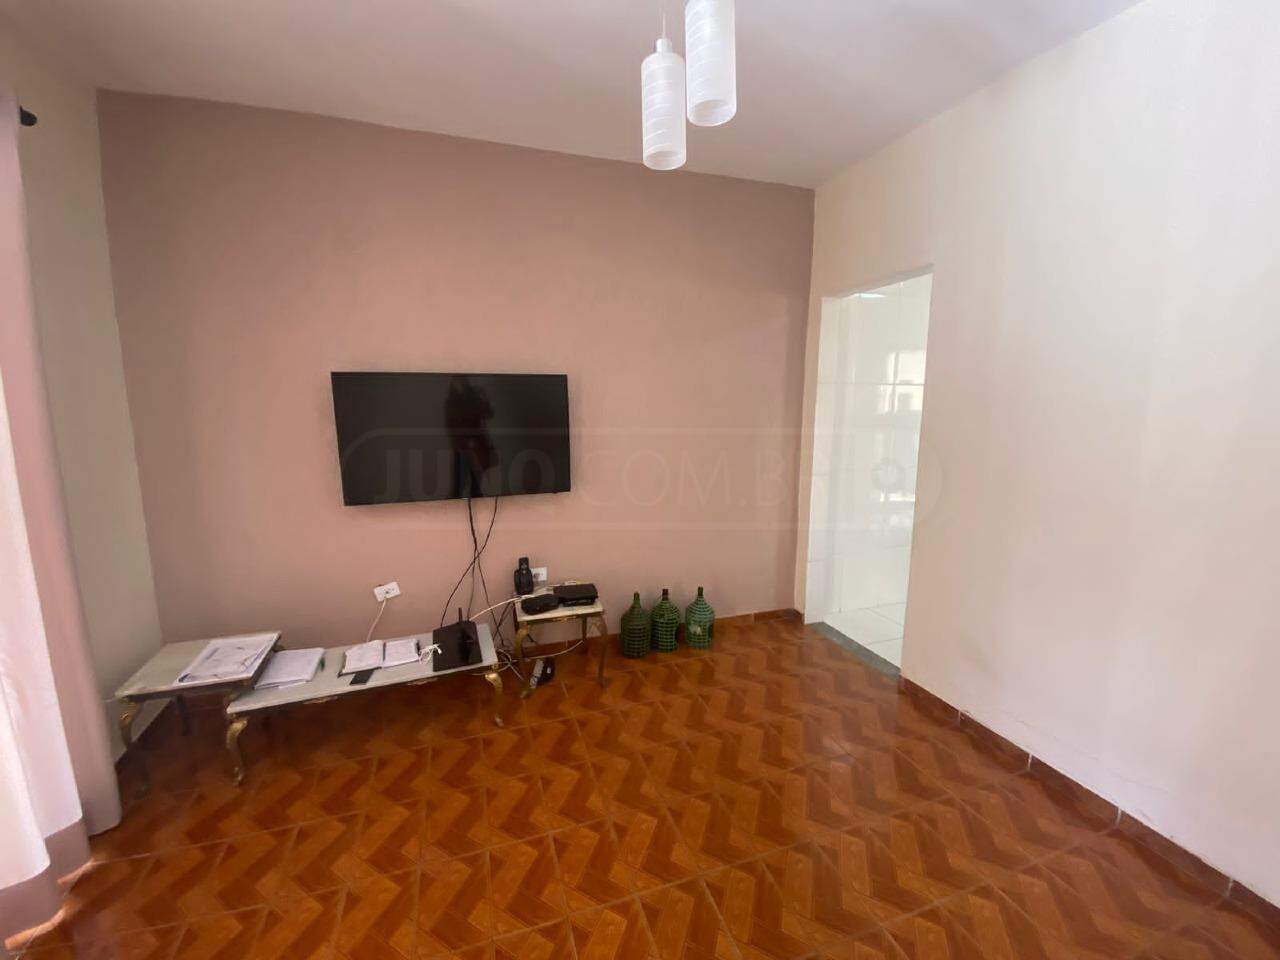 Casa à venda, 2 quartos, 2 vagas, no bairro Jardim Diamante em Piracicaba - SP